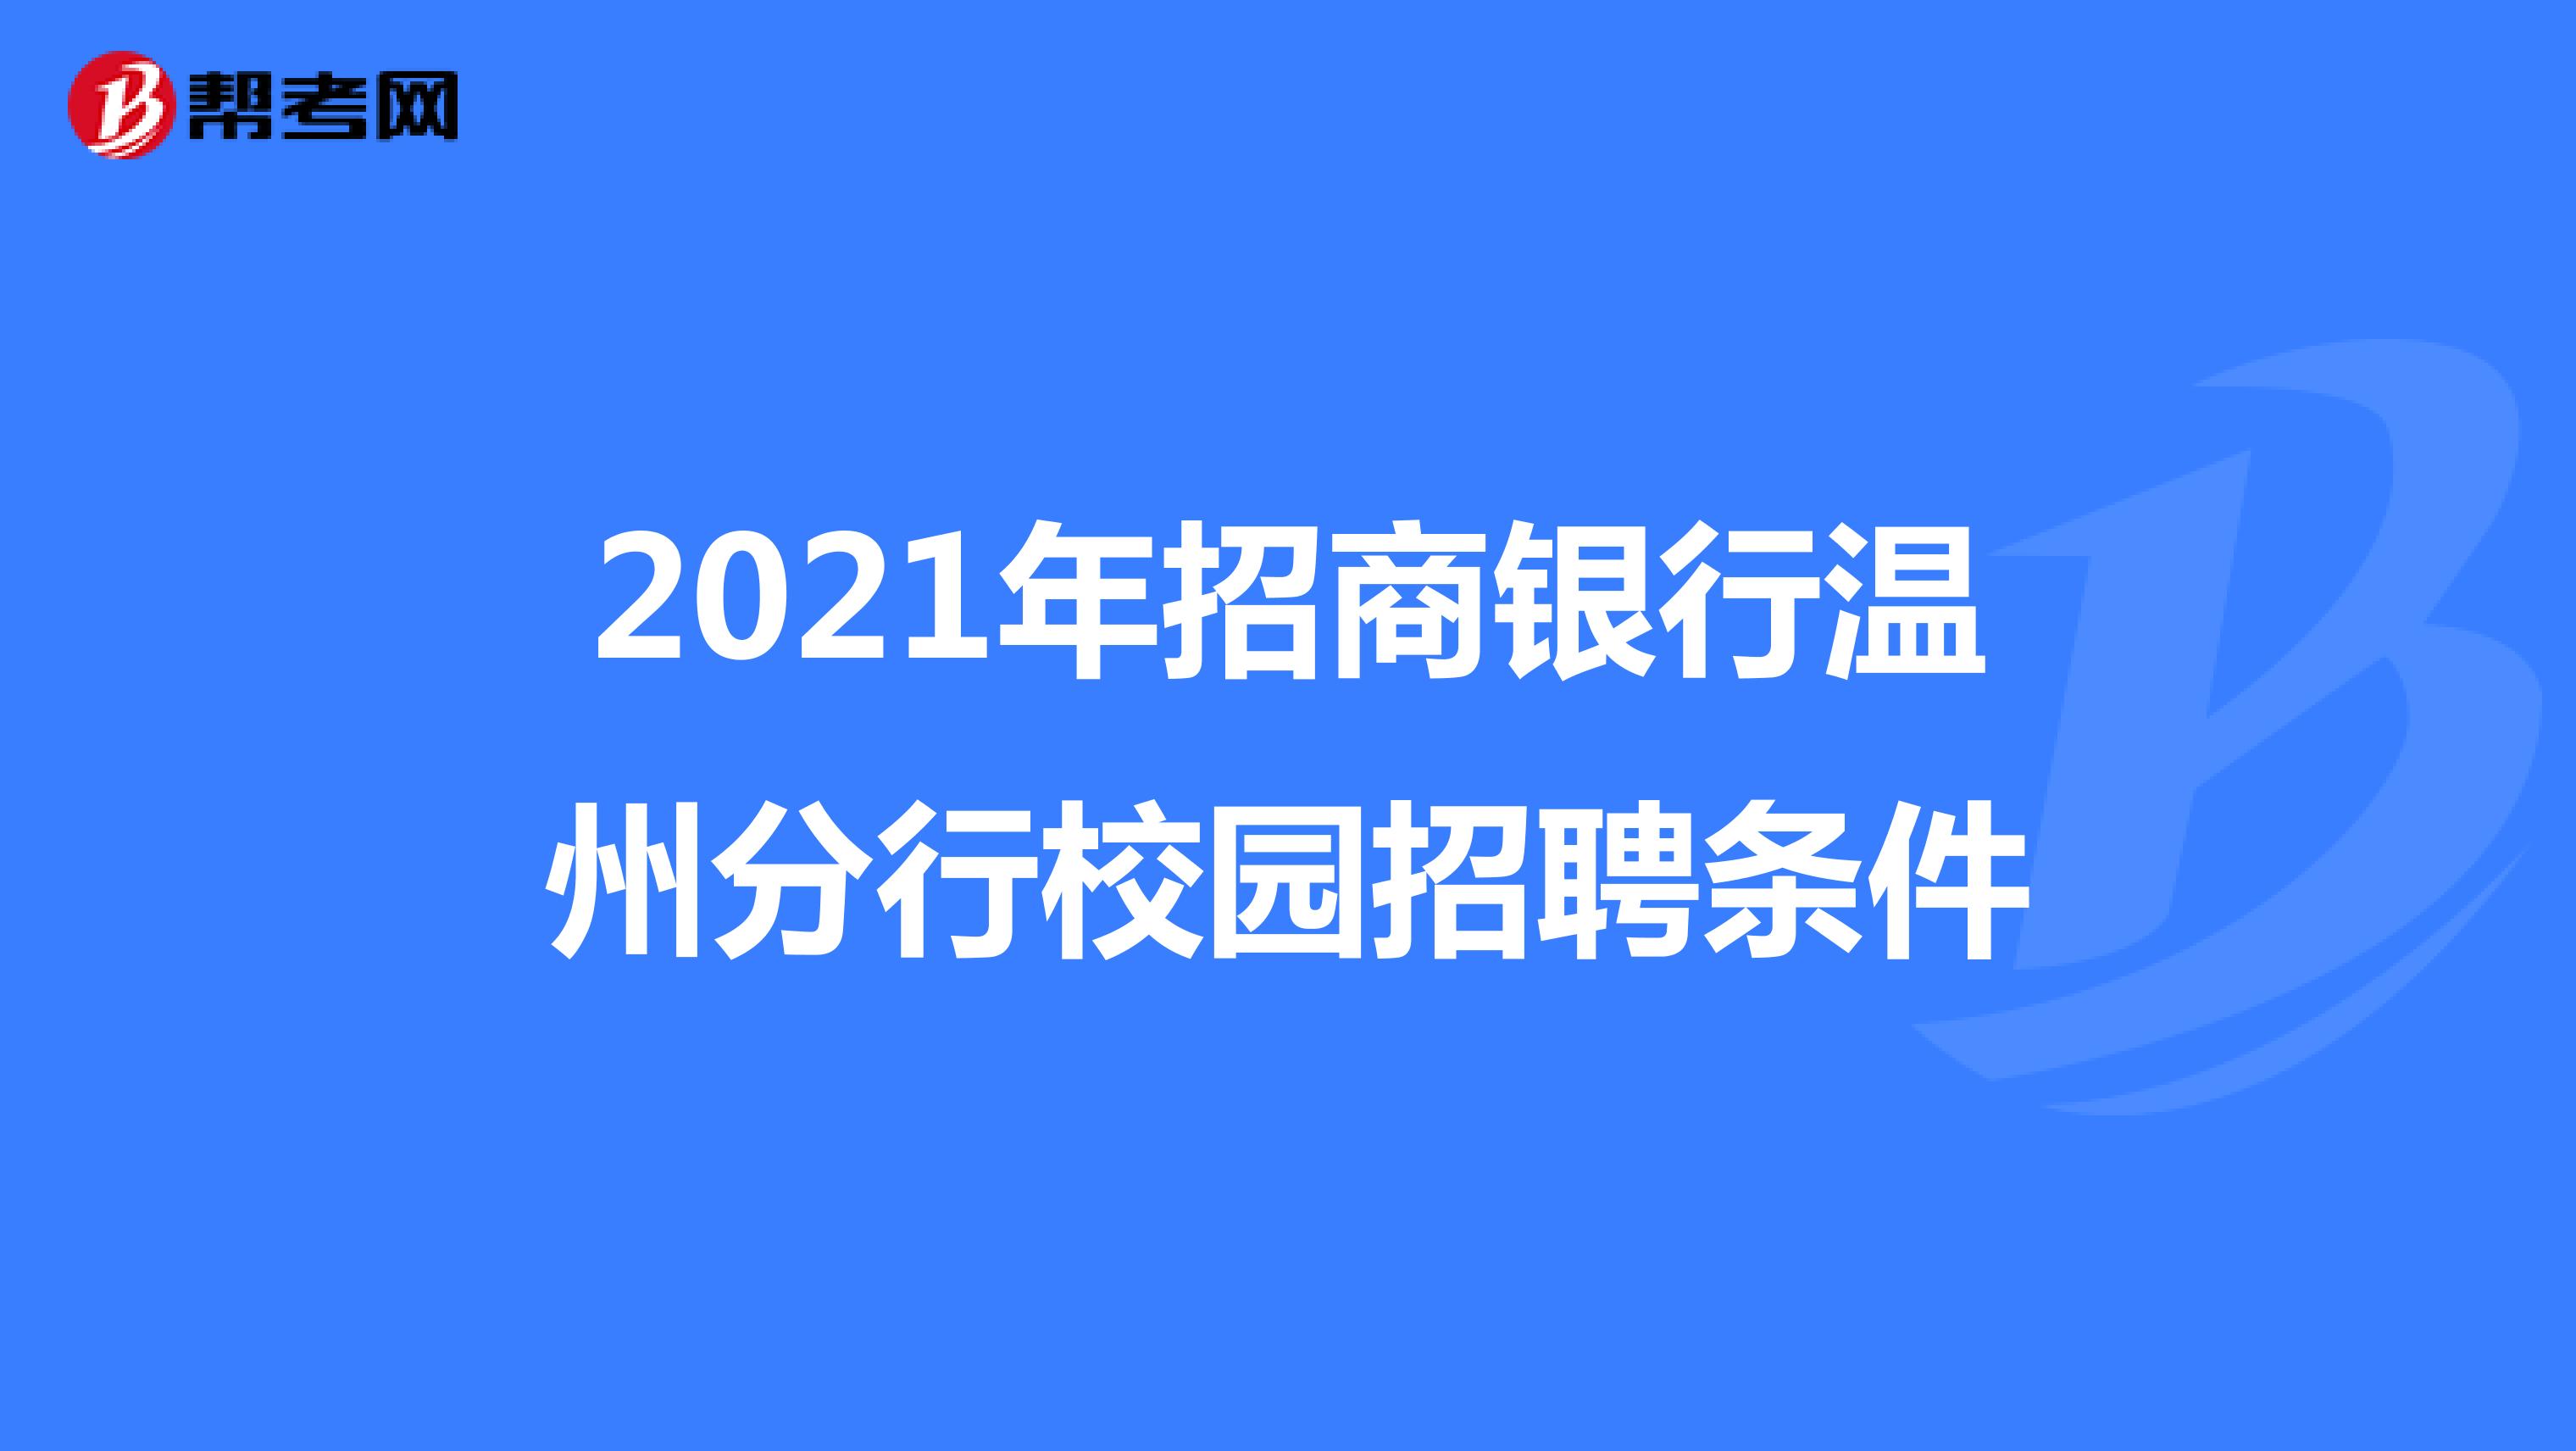 2021年招商银行温州分行校园招聘条件